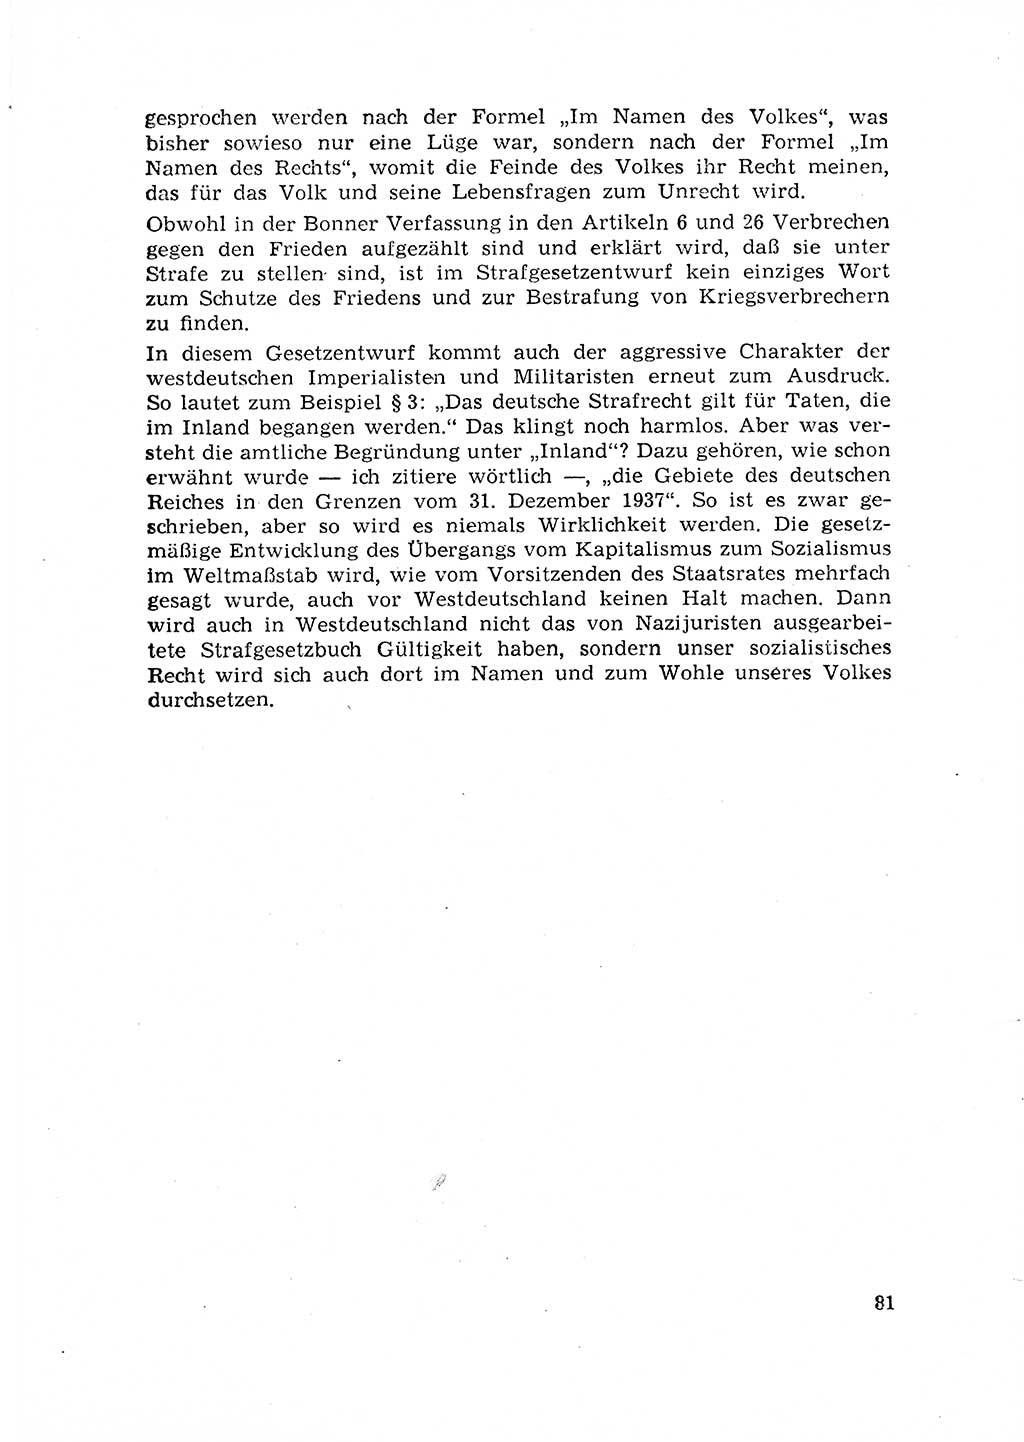 Rechtspflegeerlaß [Deutsche Demokratische Republik (DDR)] 1963, Seite 81 (R.-Pfl.-Erl. DDR 1963, S. 81)